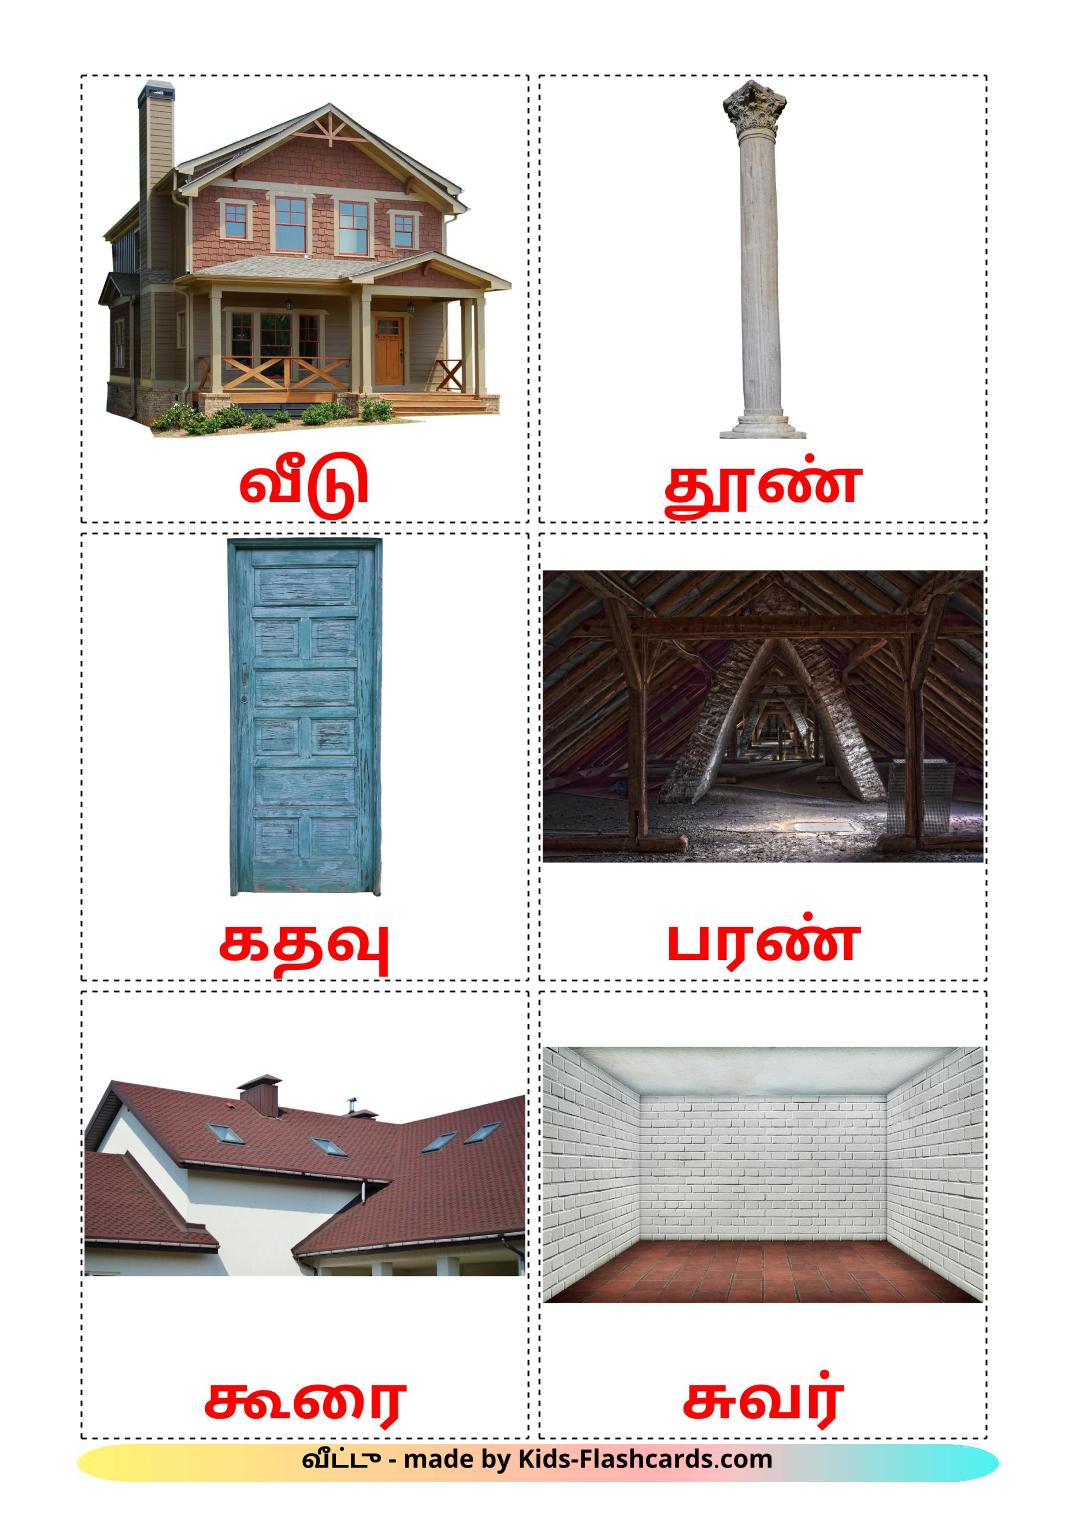 Wohnung - 25 kostenlose, druckbare Tamilisch Flashcards 